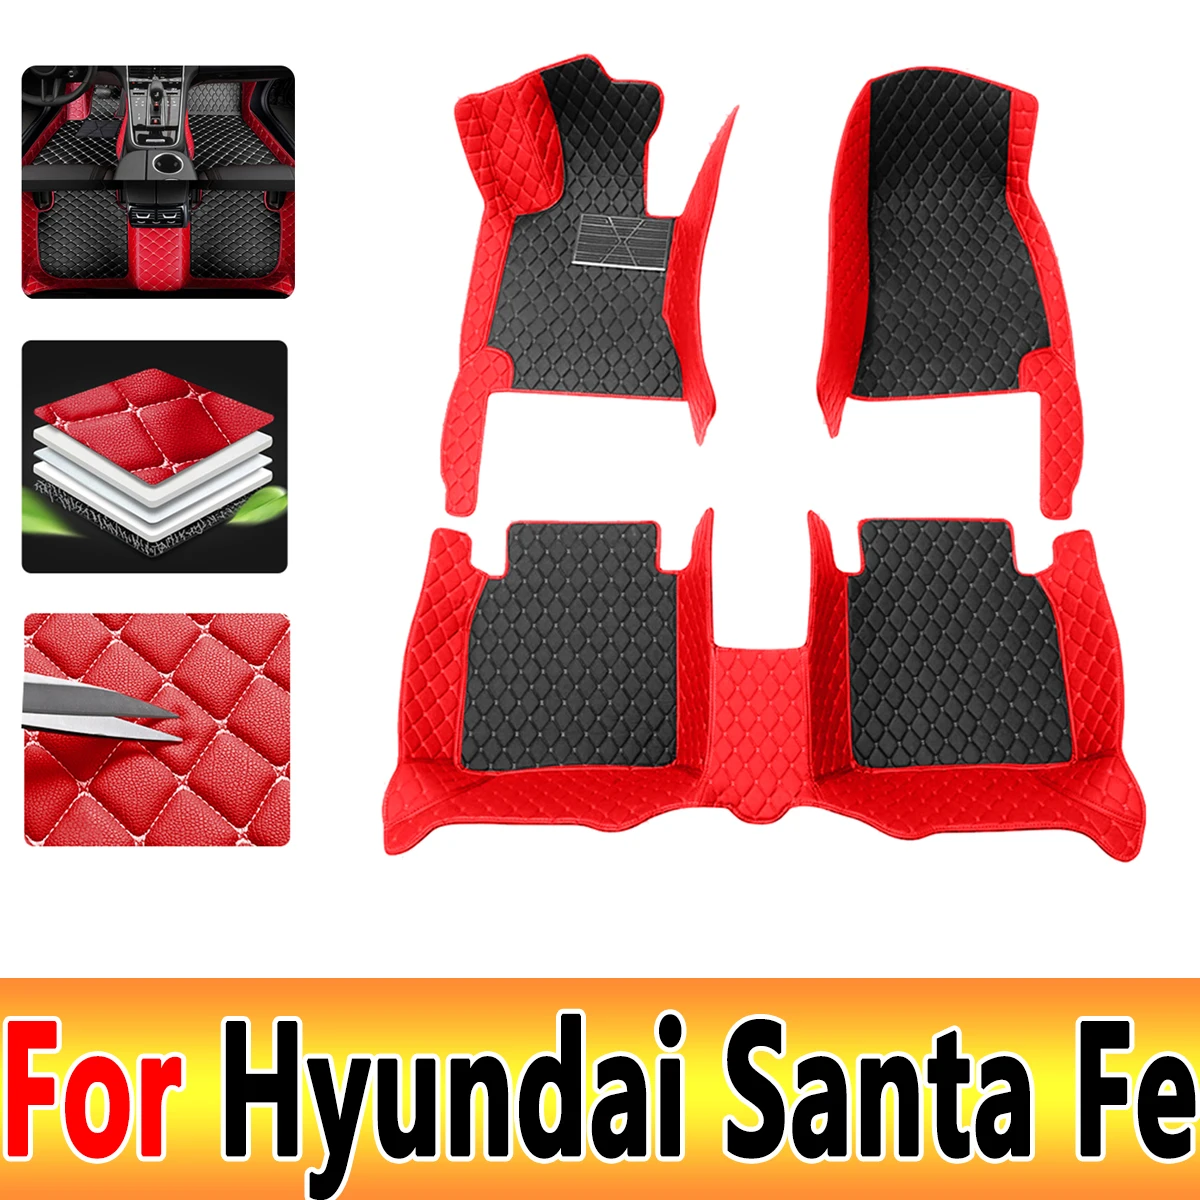 

Автомобильные коврики для Hyundai Santa Fe TM 2013 ~ 2018, водонепроницаемые коврики на 5 сидений, автомобильные коврики, напольные покрытия, автомобильные аксессуары